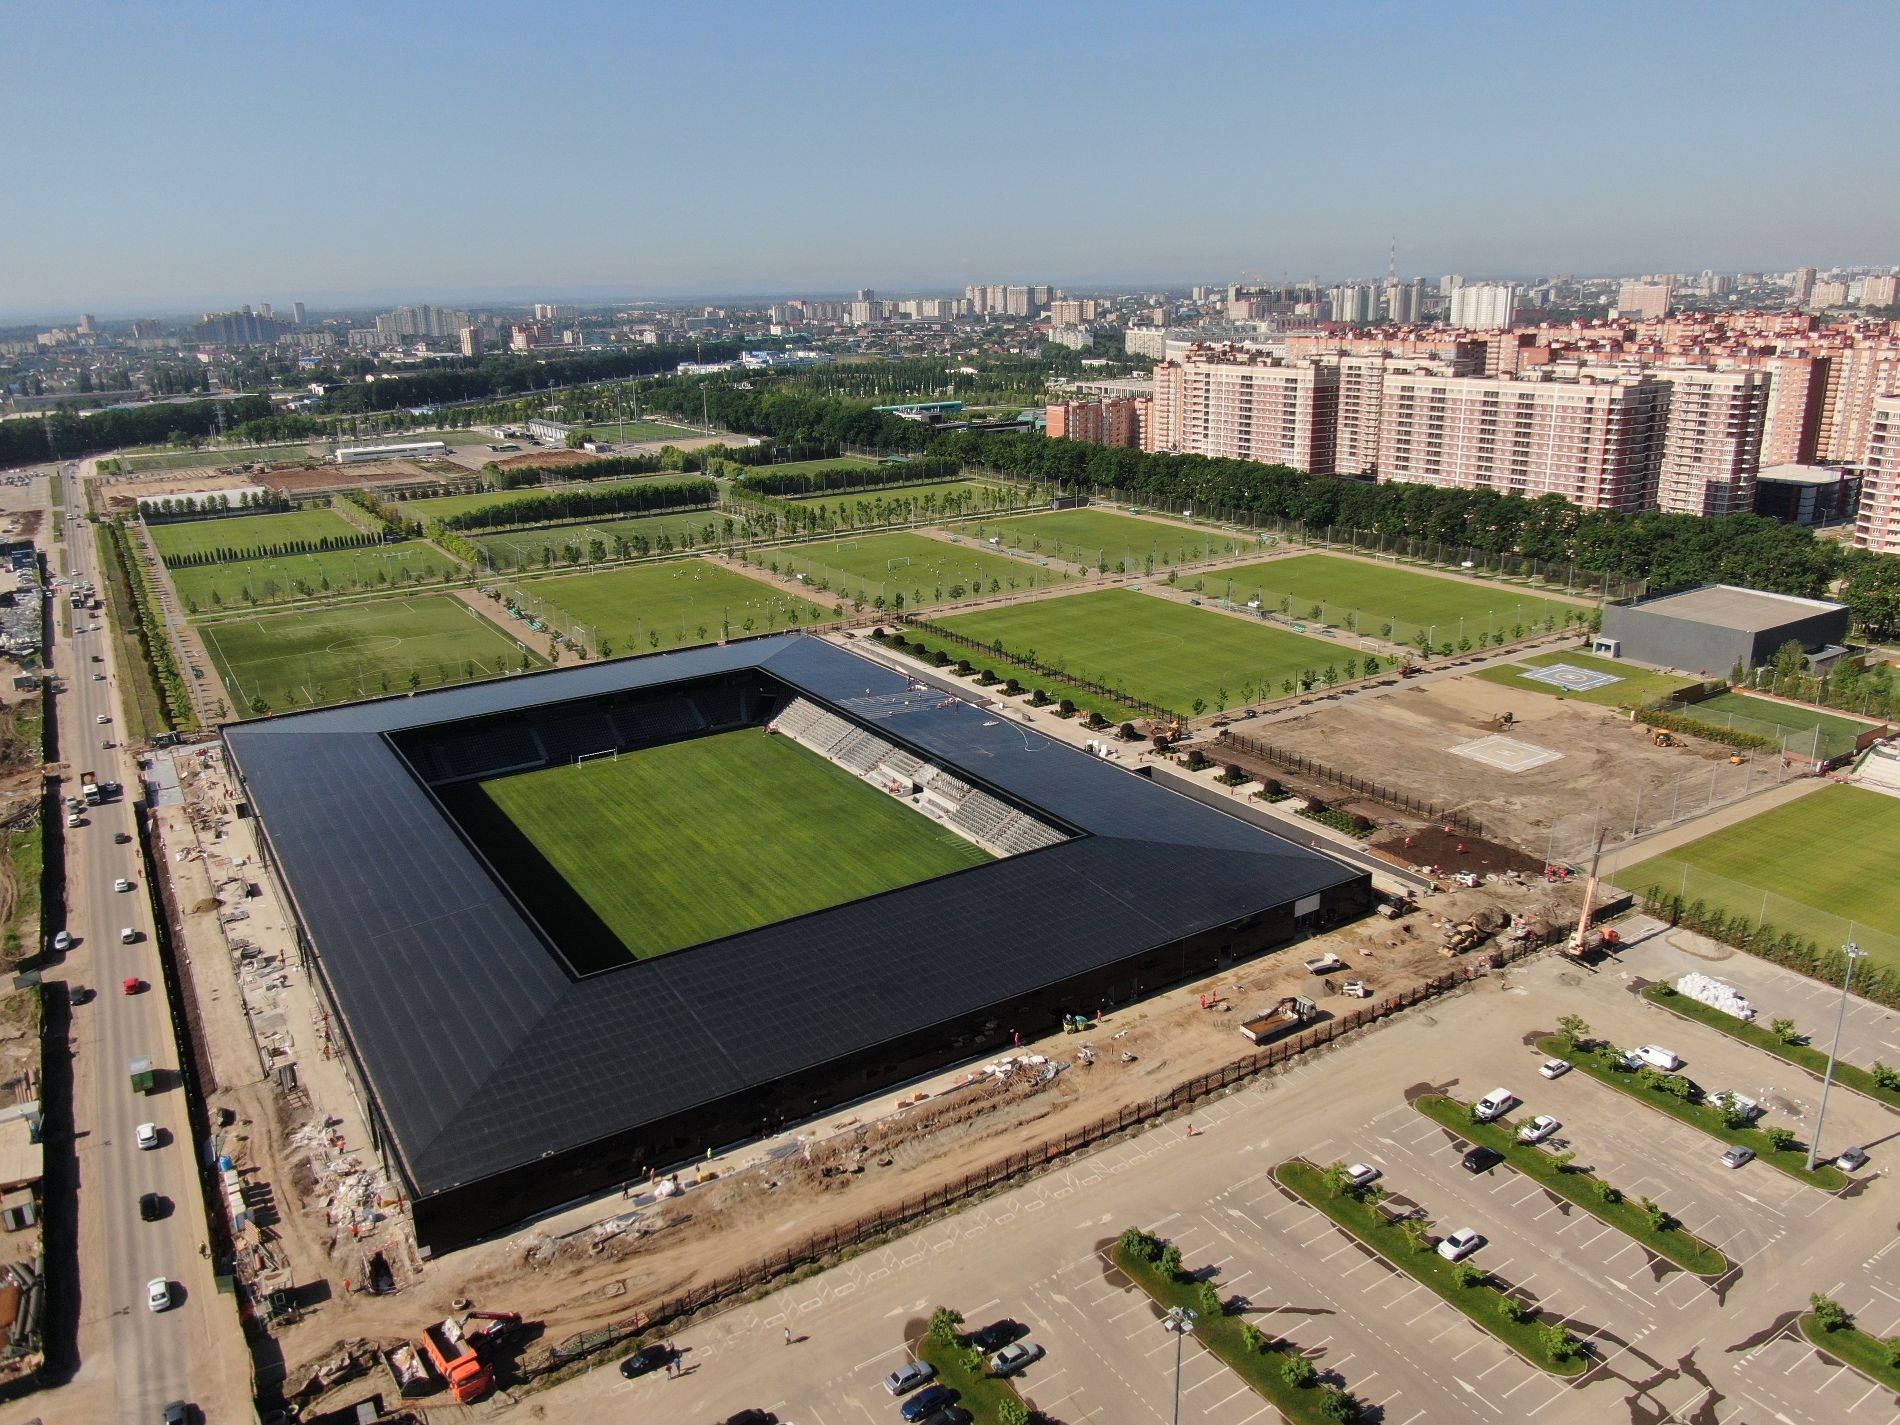 Как выглядит новый стадион в Краснодаре, который строит Галицкий? Фото и видео